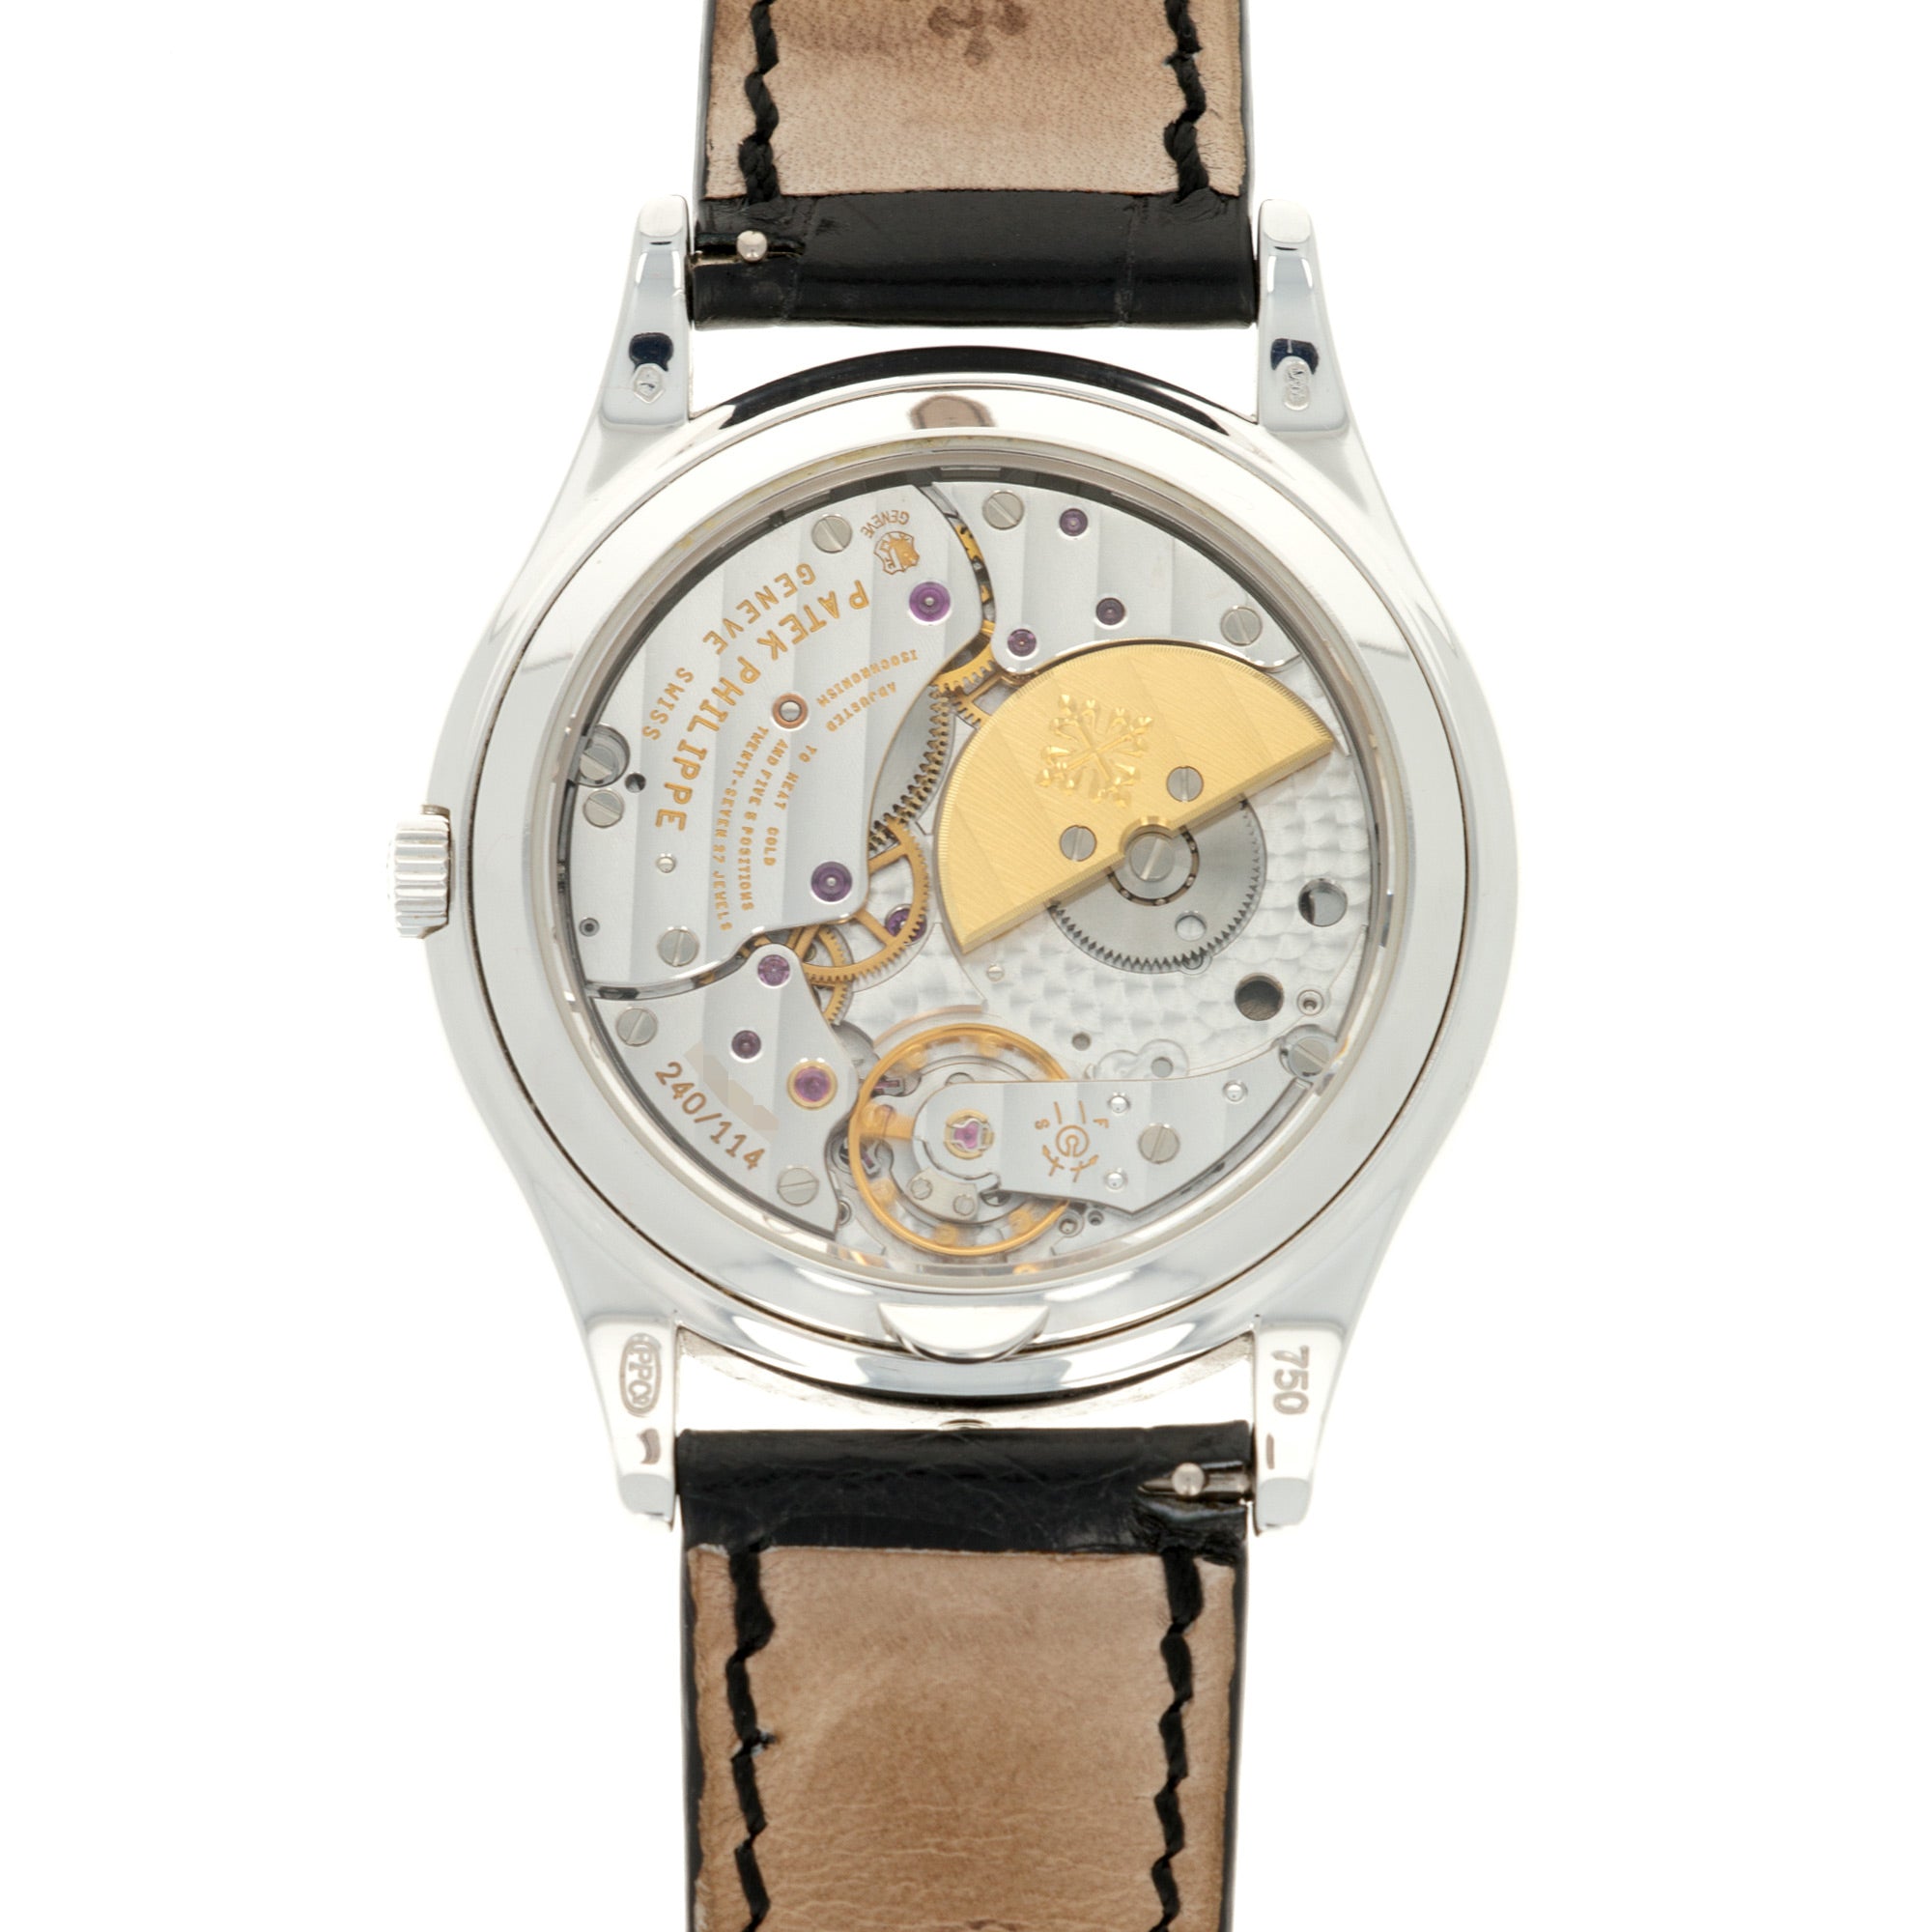 Patek Philippe White Gold Perpetual Calendar Watch Ref. 5140